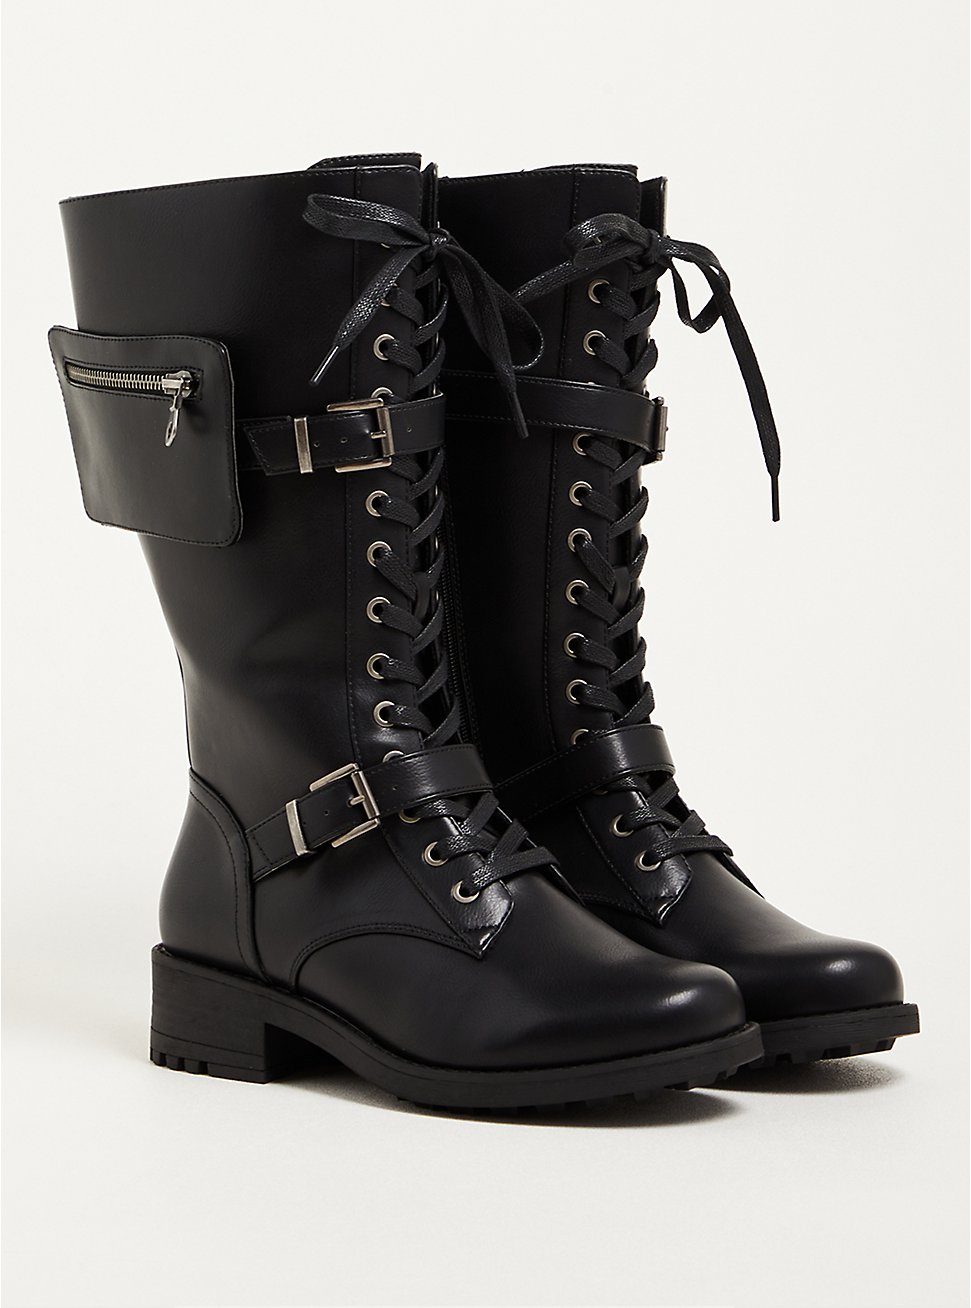 Plus Size Combat Boot - Faux Leather Black (WW), BLACK, hi-res